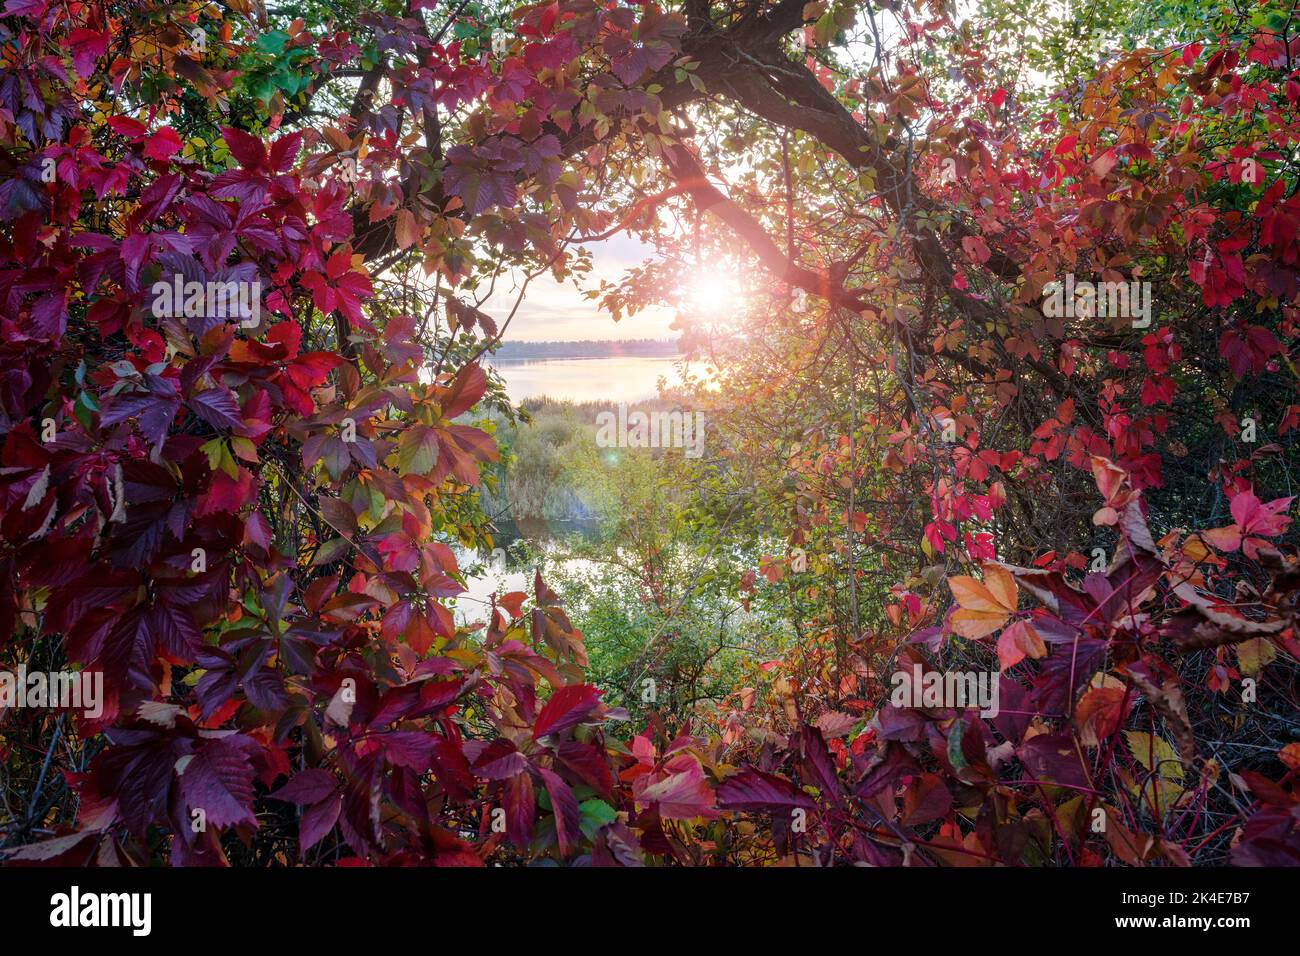 L'automne luxuriant colore le feuillage des raisins sauvages contre un coucher de soleil fantastique Banque D'Images